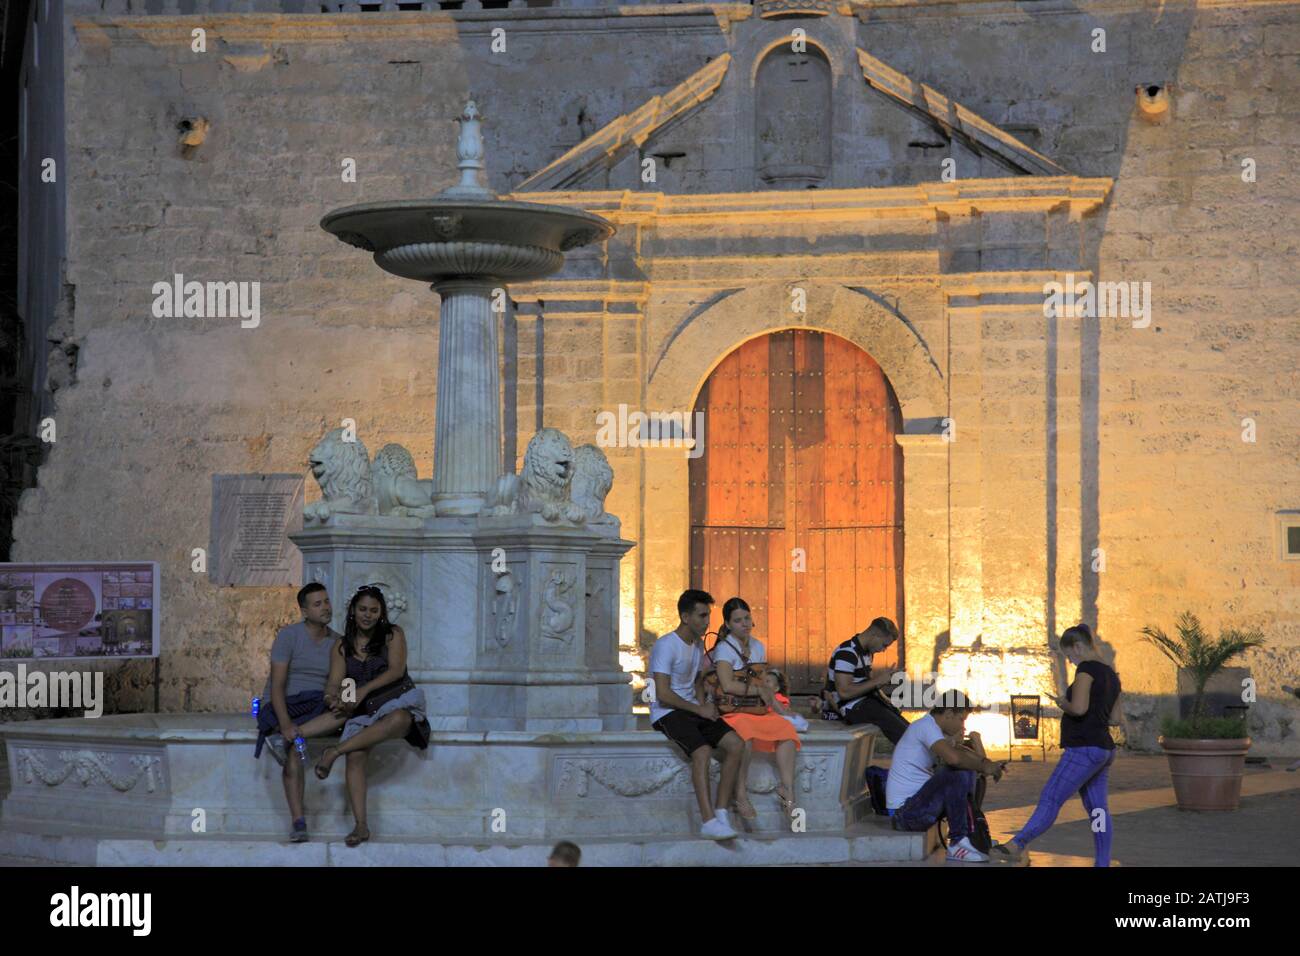 Cuba, Havana, Plaza de San Francisco de Asis, Fuente de los Leones, Stock Photo